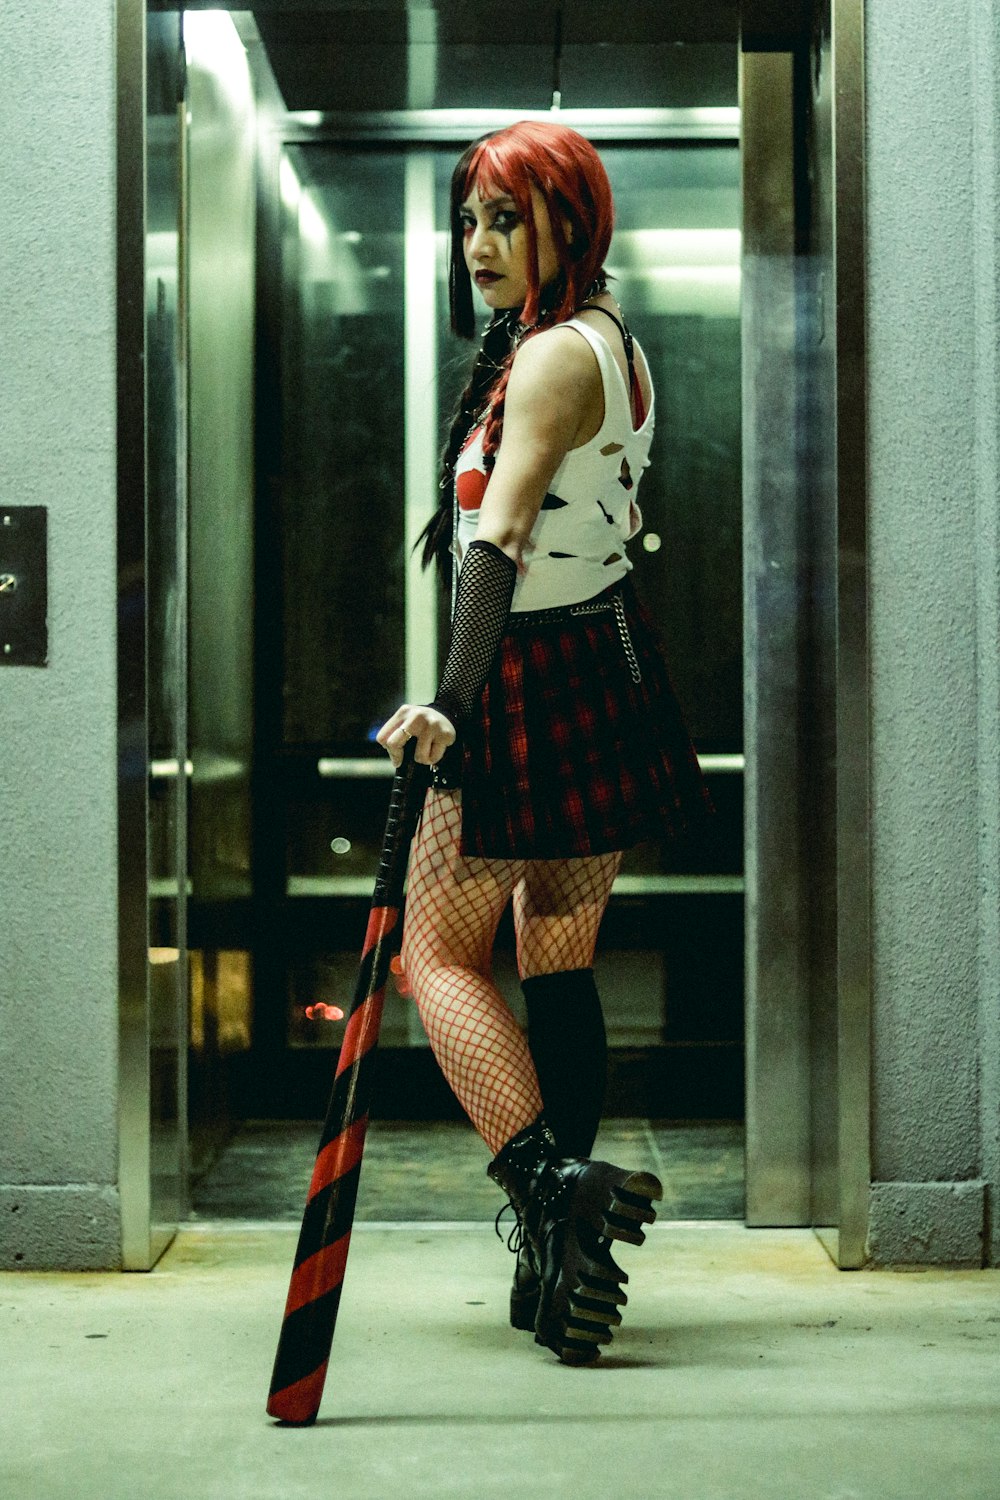 a woman in a short skirt holding a bat